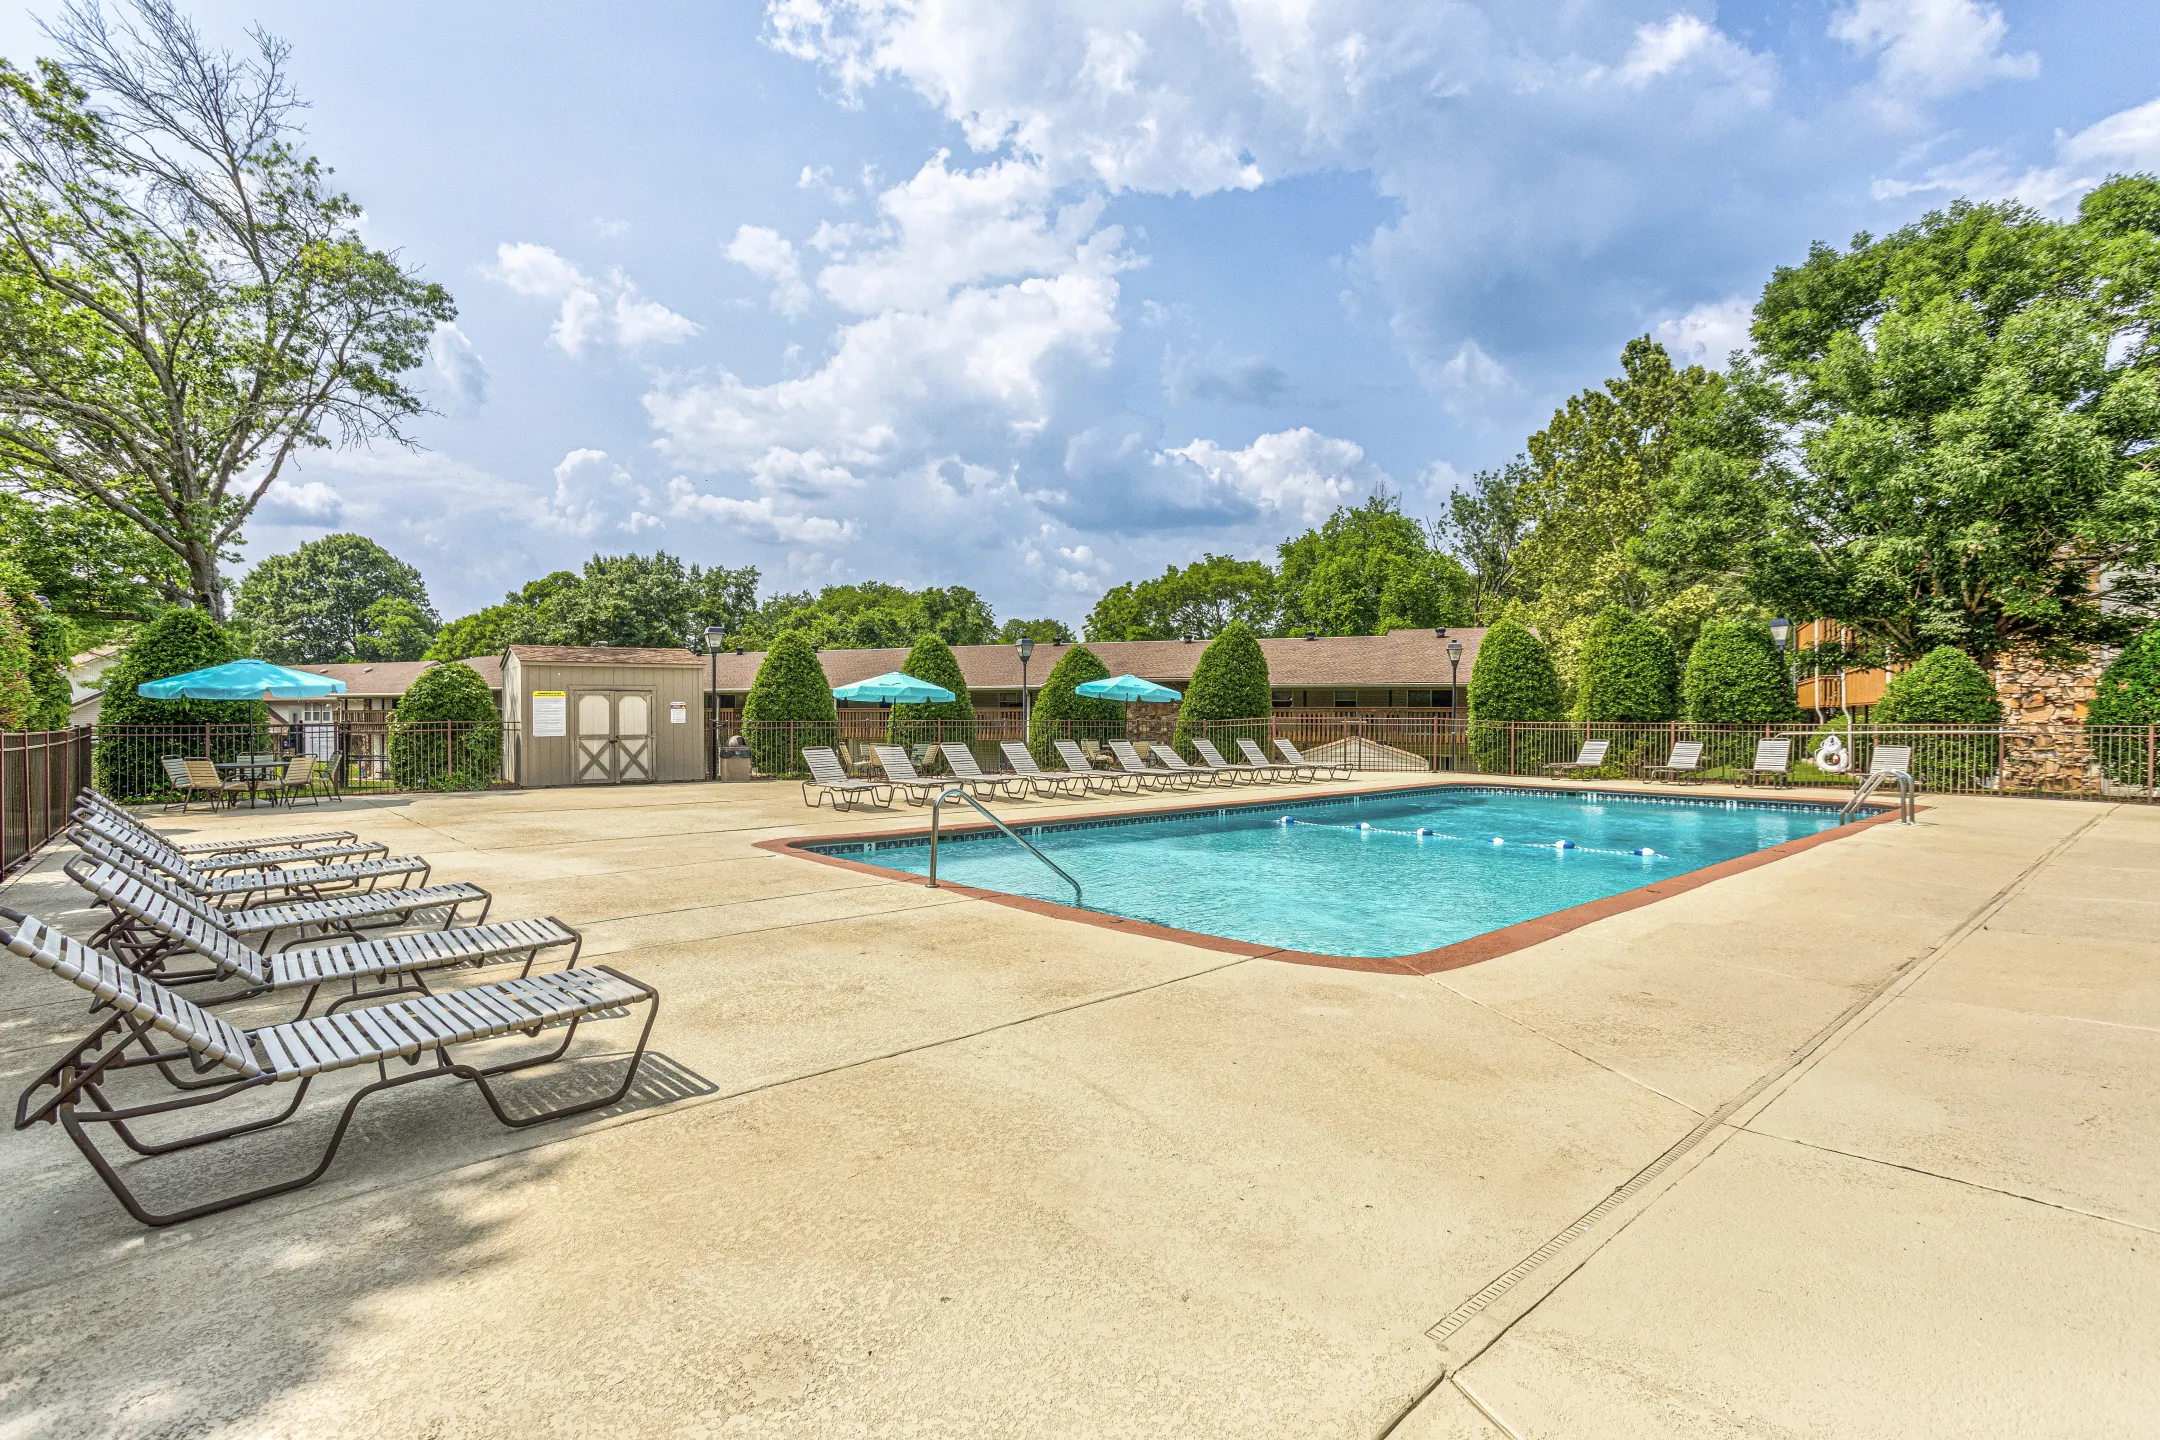 Pool - Summerfield Place - Goodlettsville, TN